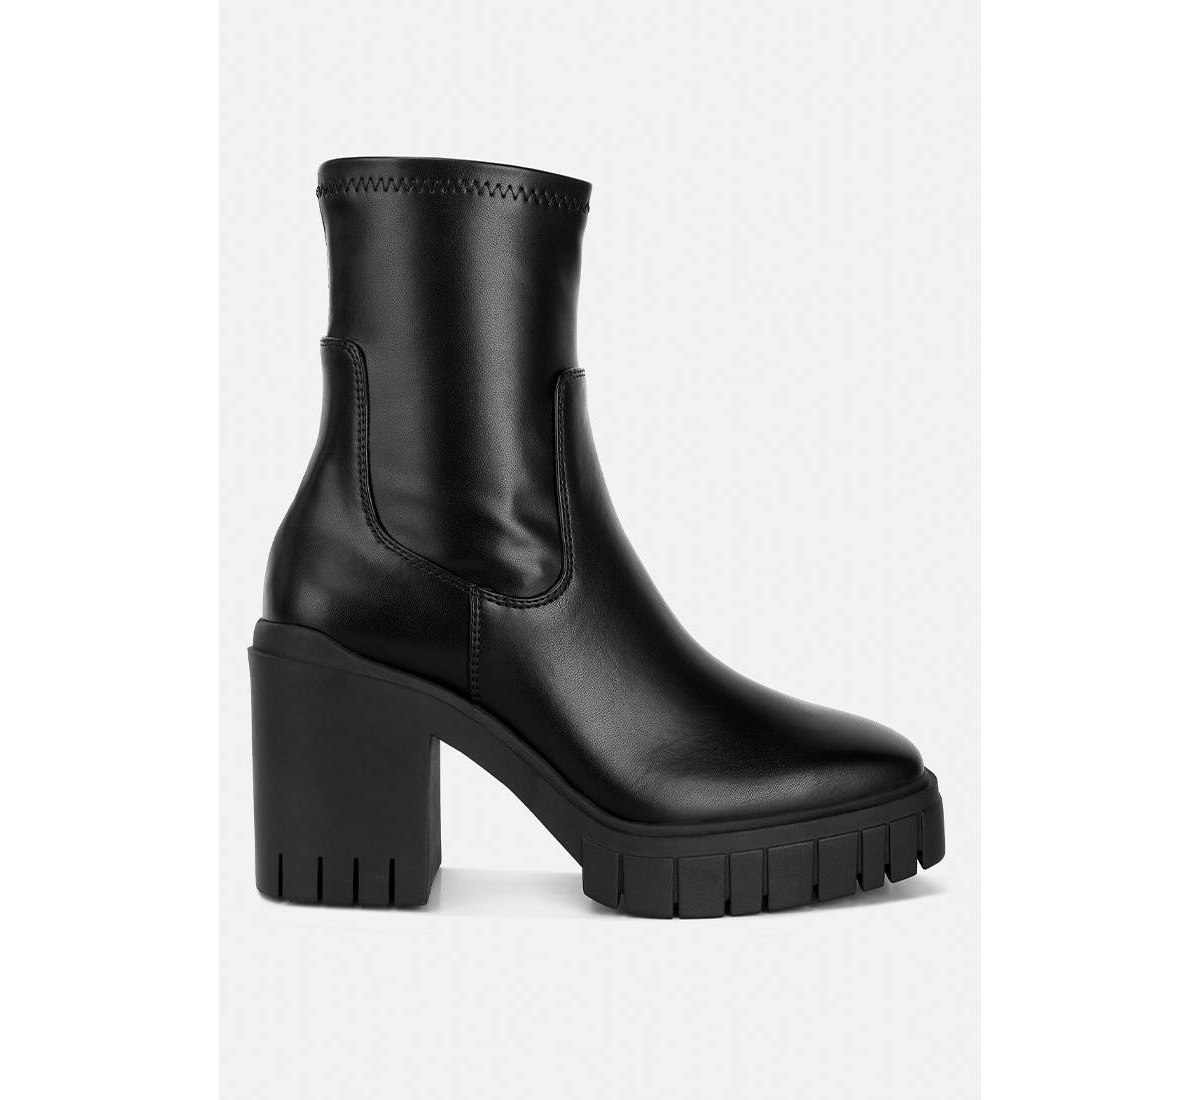 kokum faux leather platform boots - Tan